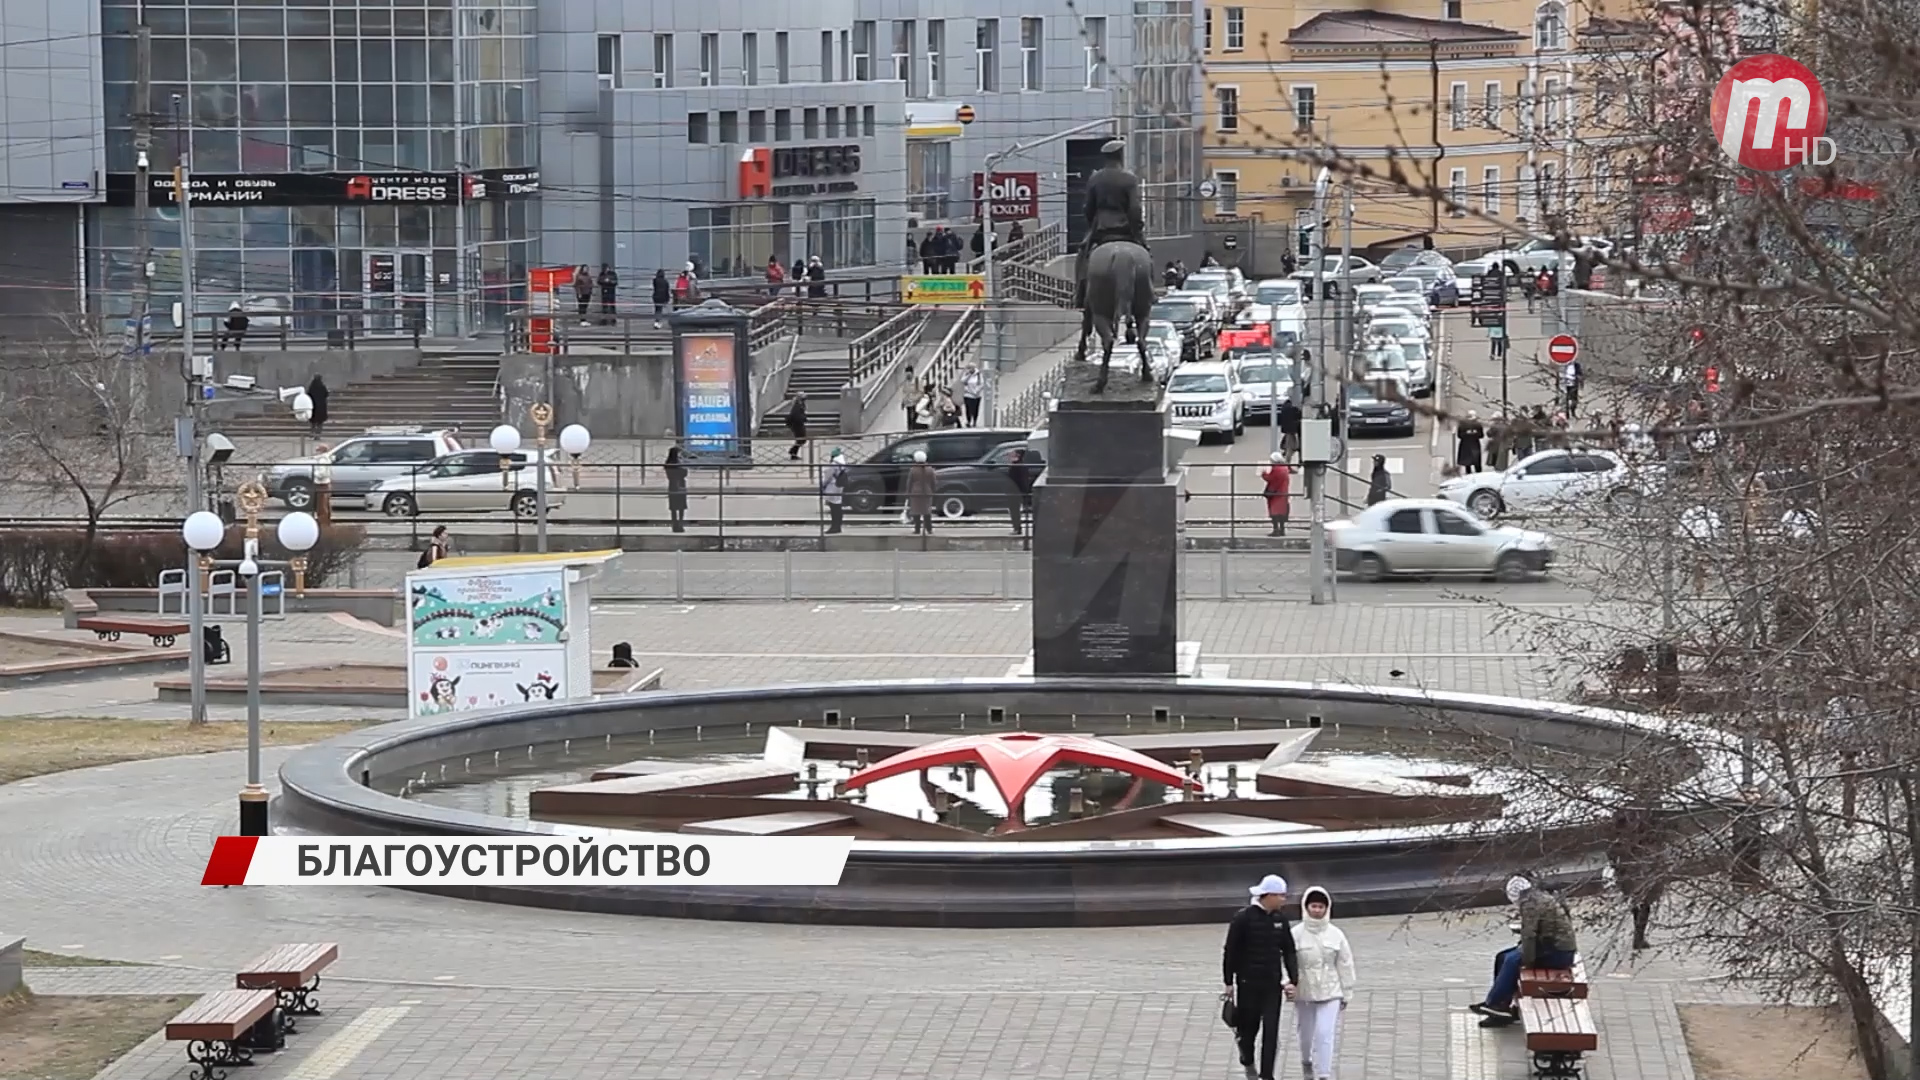 В Бурятии проходит всероссийское голосование по благоустройству общественных территорий